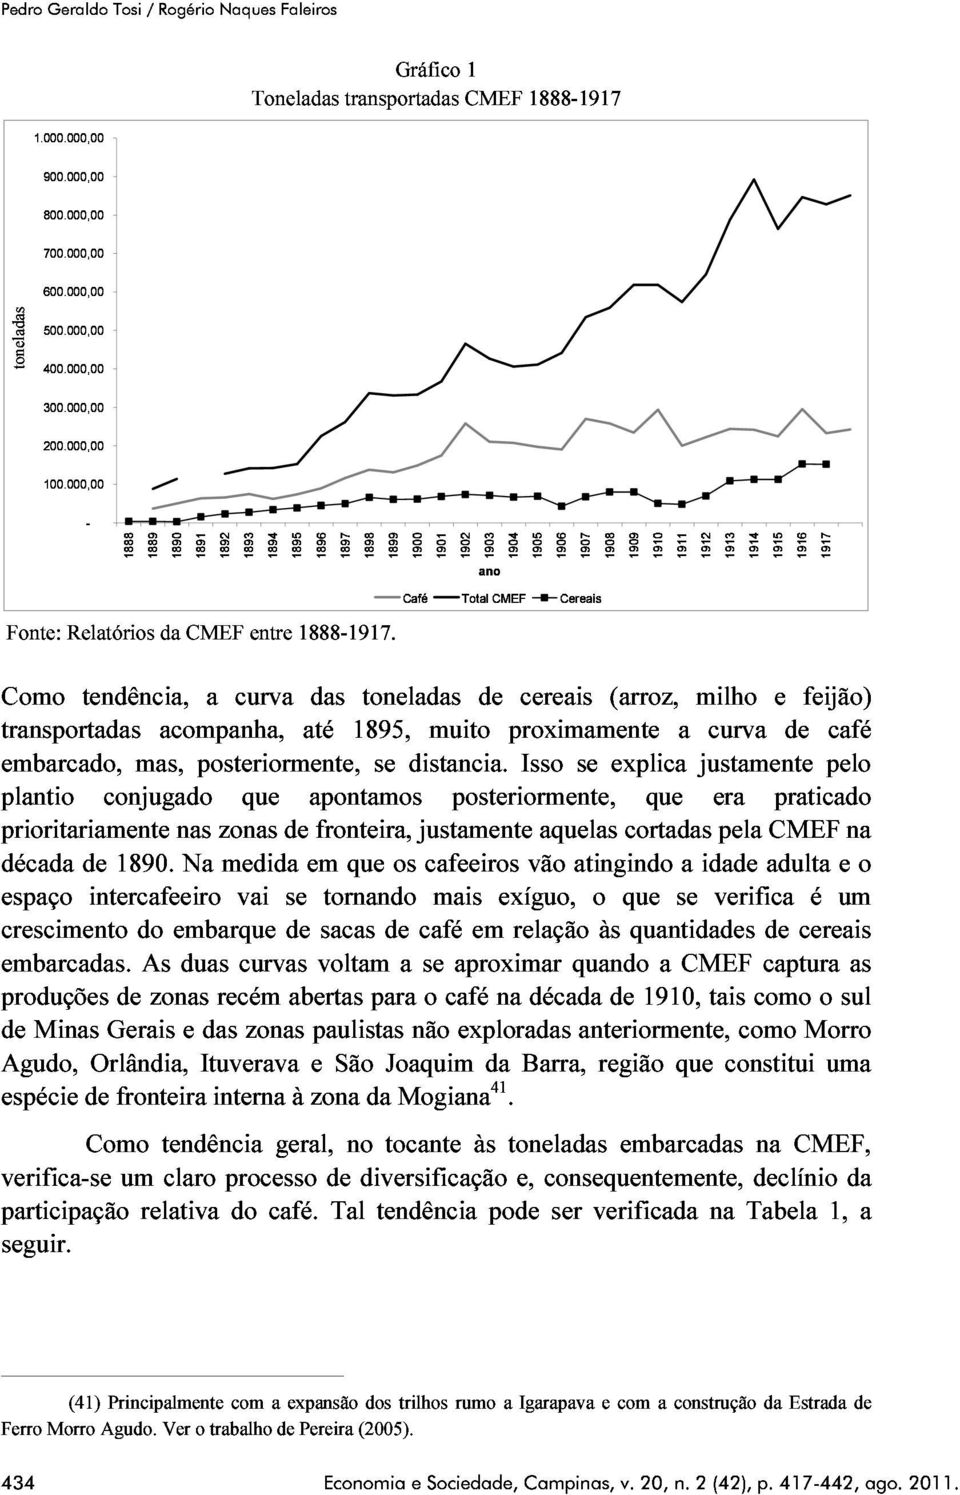 CaféTotal CMEFCereais transportadas embarcado, plantio tendência, a curva das toneladas de cereais (arroz, milho e feijão) prioritariamente acompanha, até 1895, muito proximamente curva de café